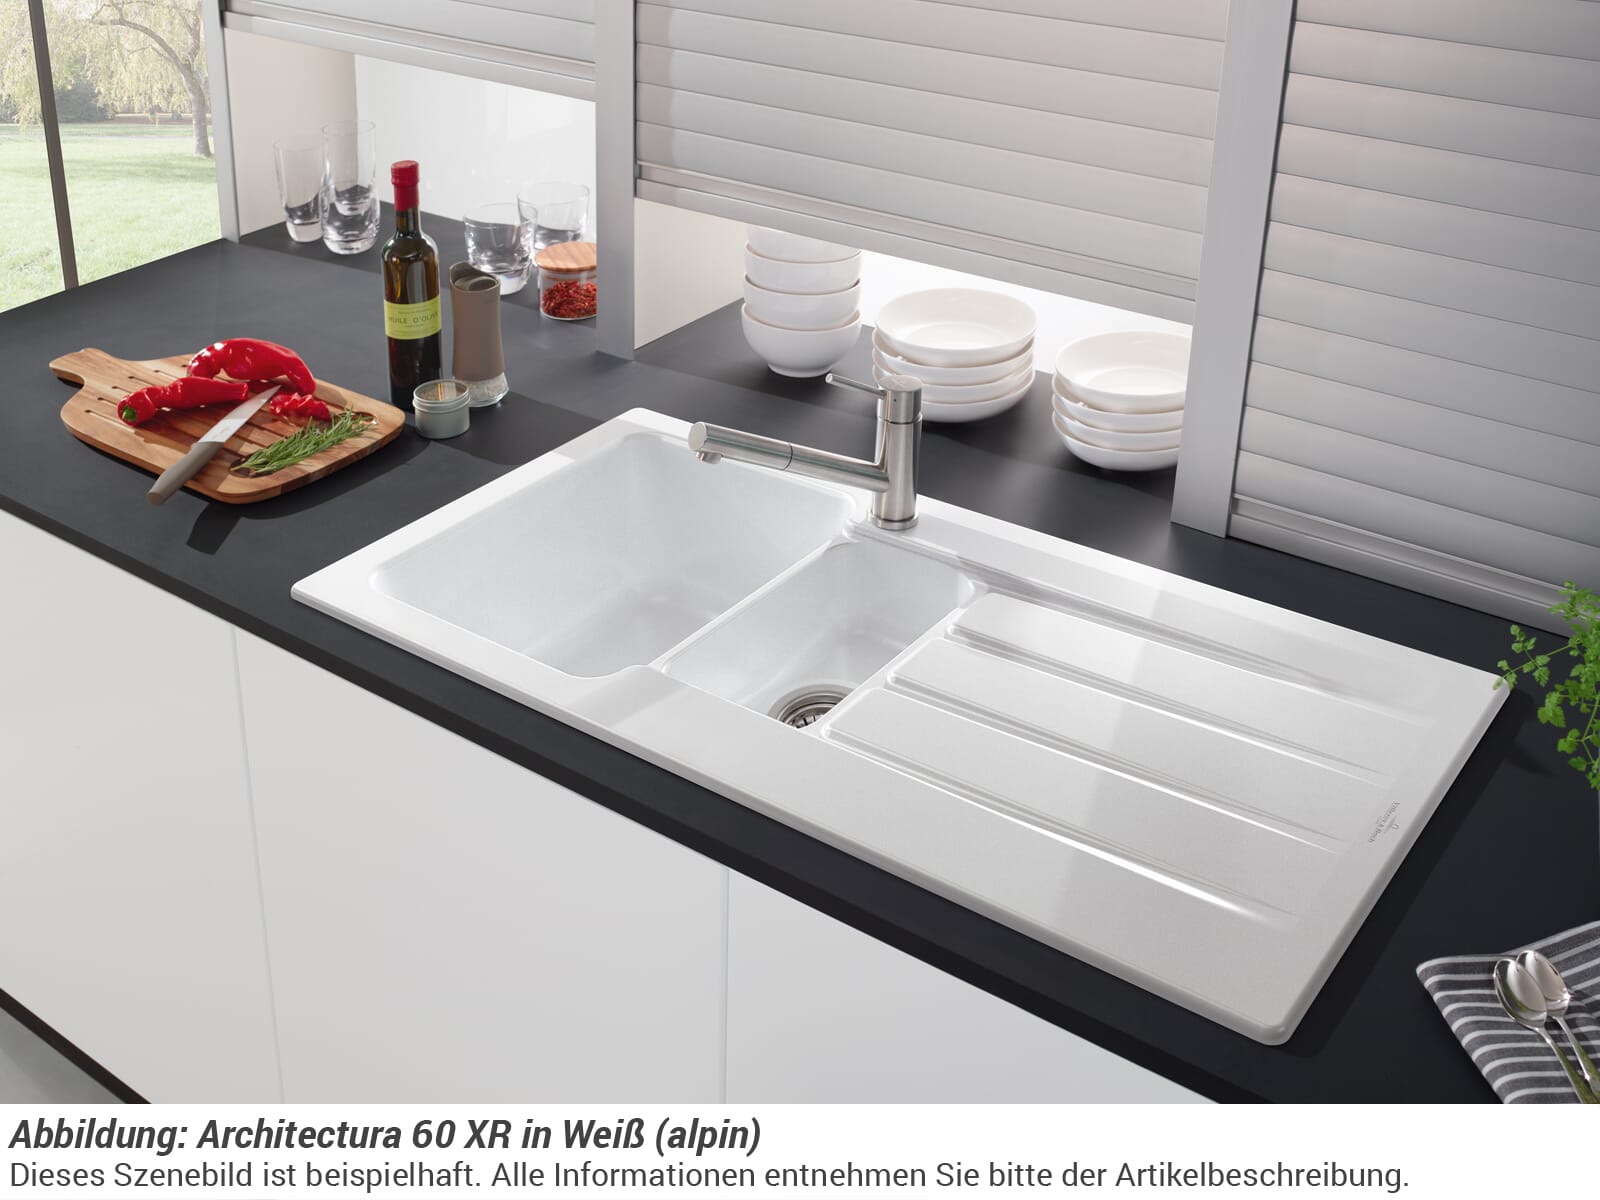 Villeroy & Boch (alpin) 3365 XR Keramikspüle R1 01 Handbetätigung 60 Weiß Architectura 